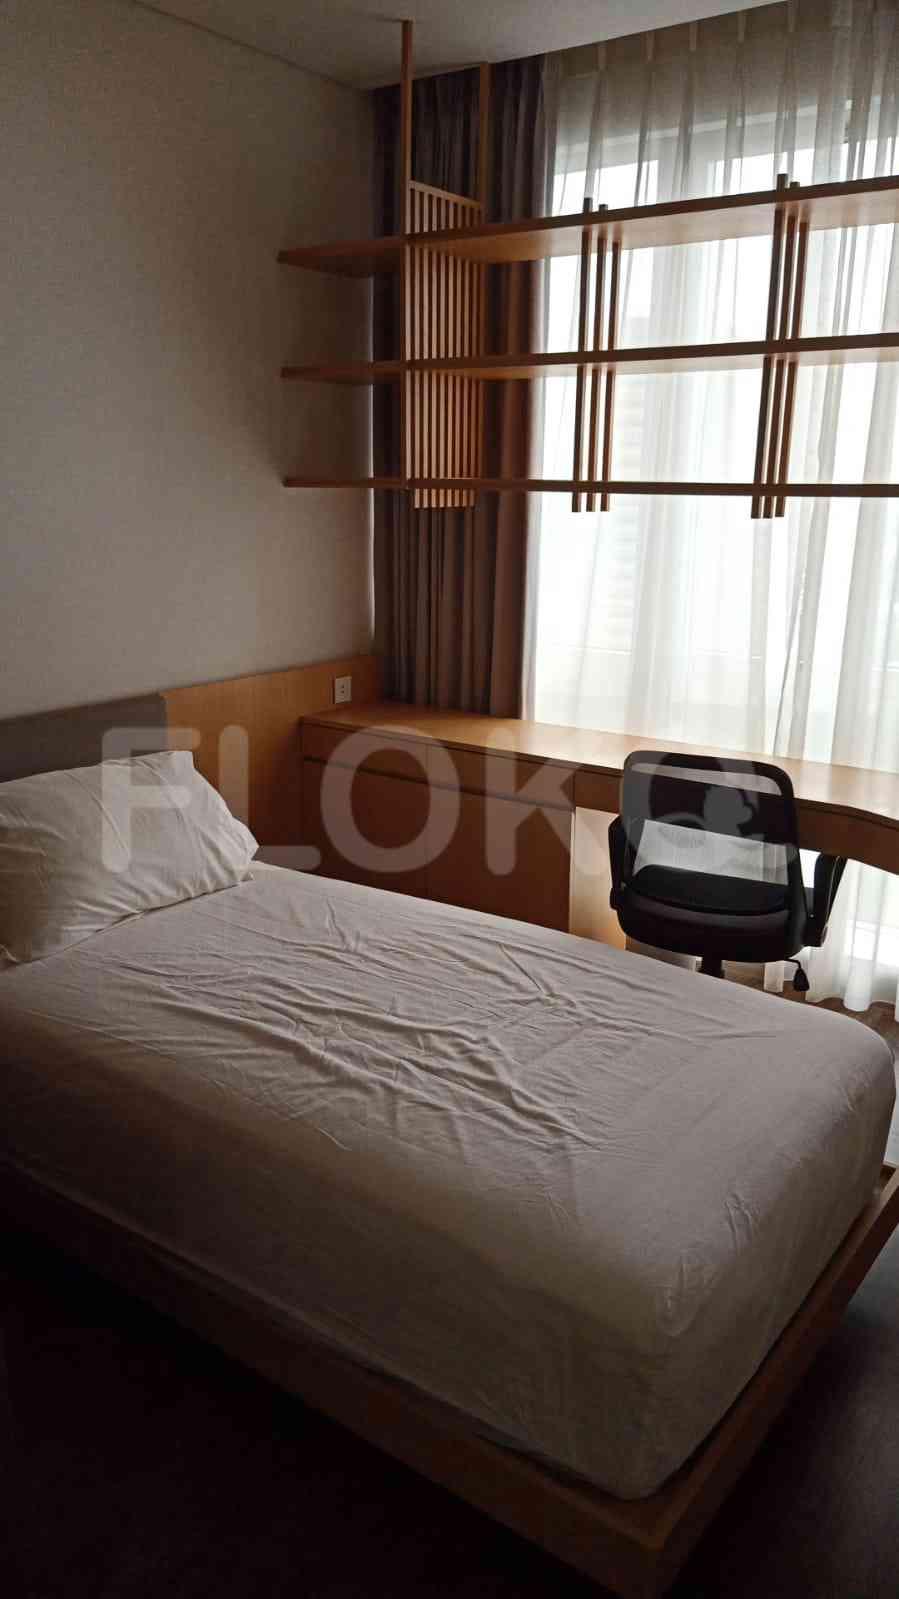 2 Bedroom on 12th Floor for Rent in Apartemen Branz Simatupang - ftbeee 2